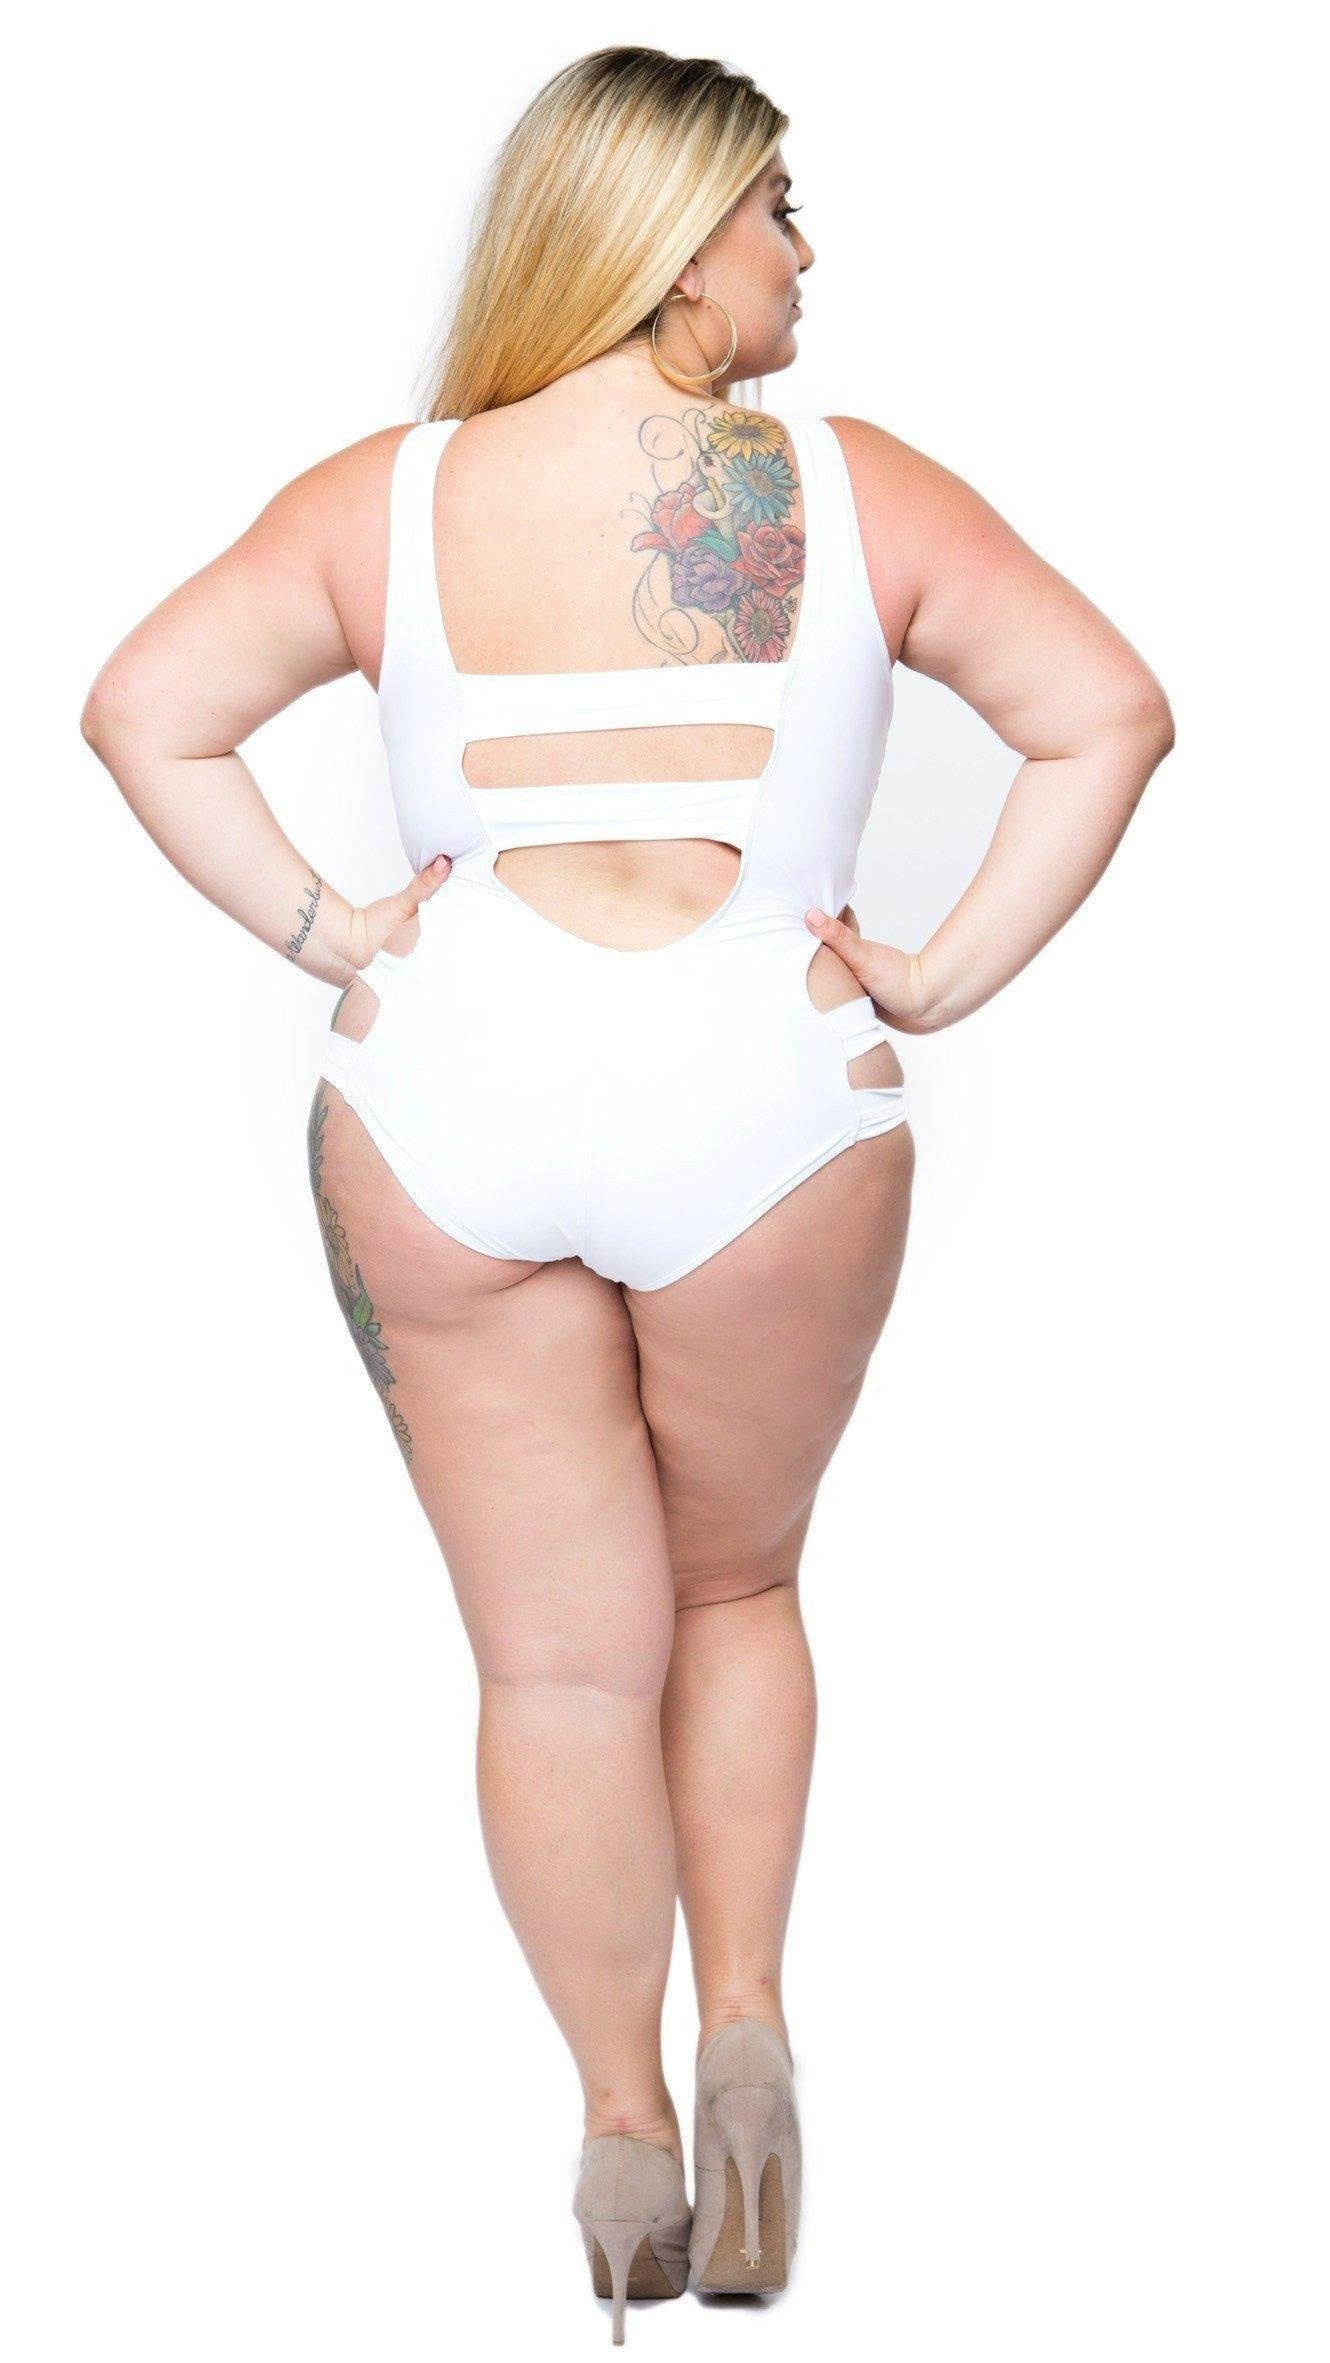 Plus Size Bathing Suit (White) 1x 2x 3x – Boughie Curves